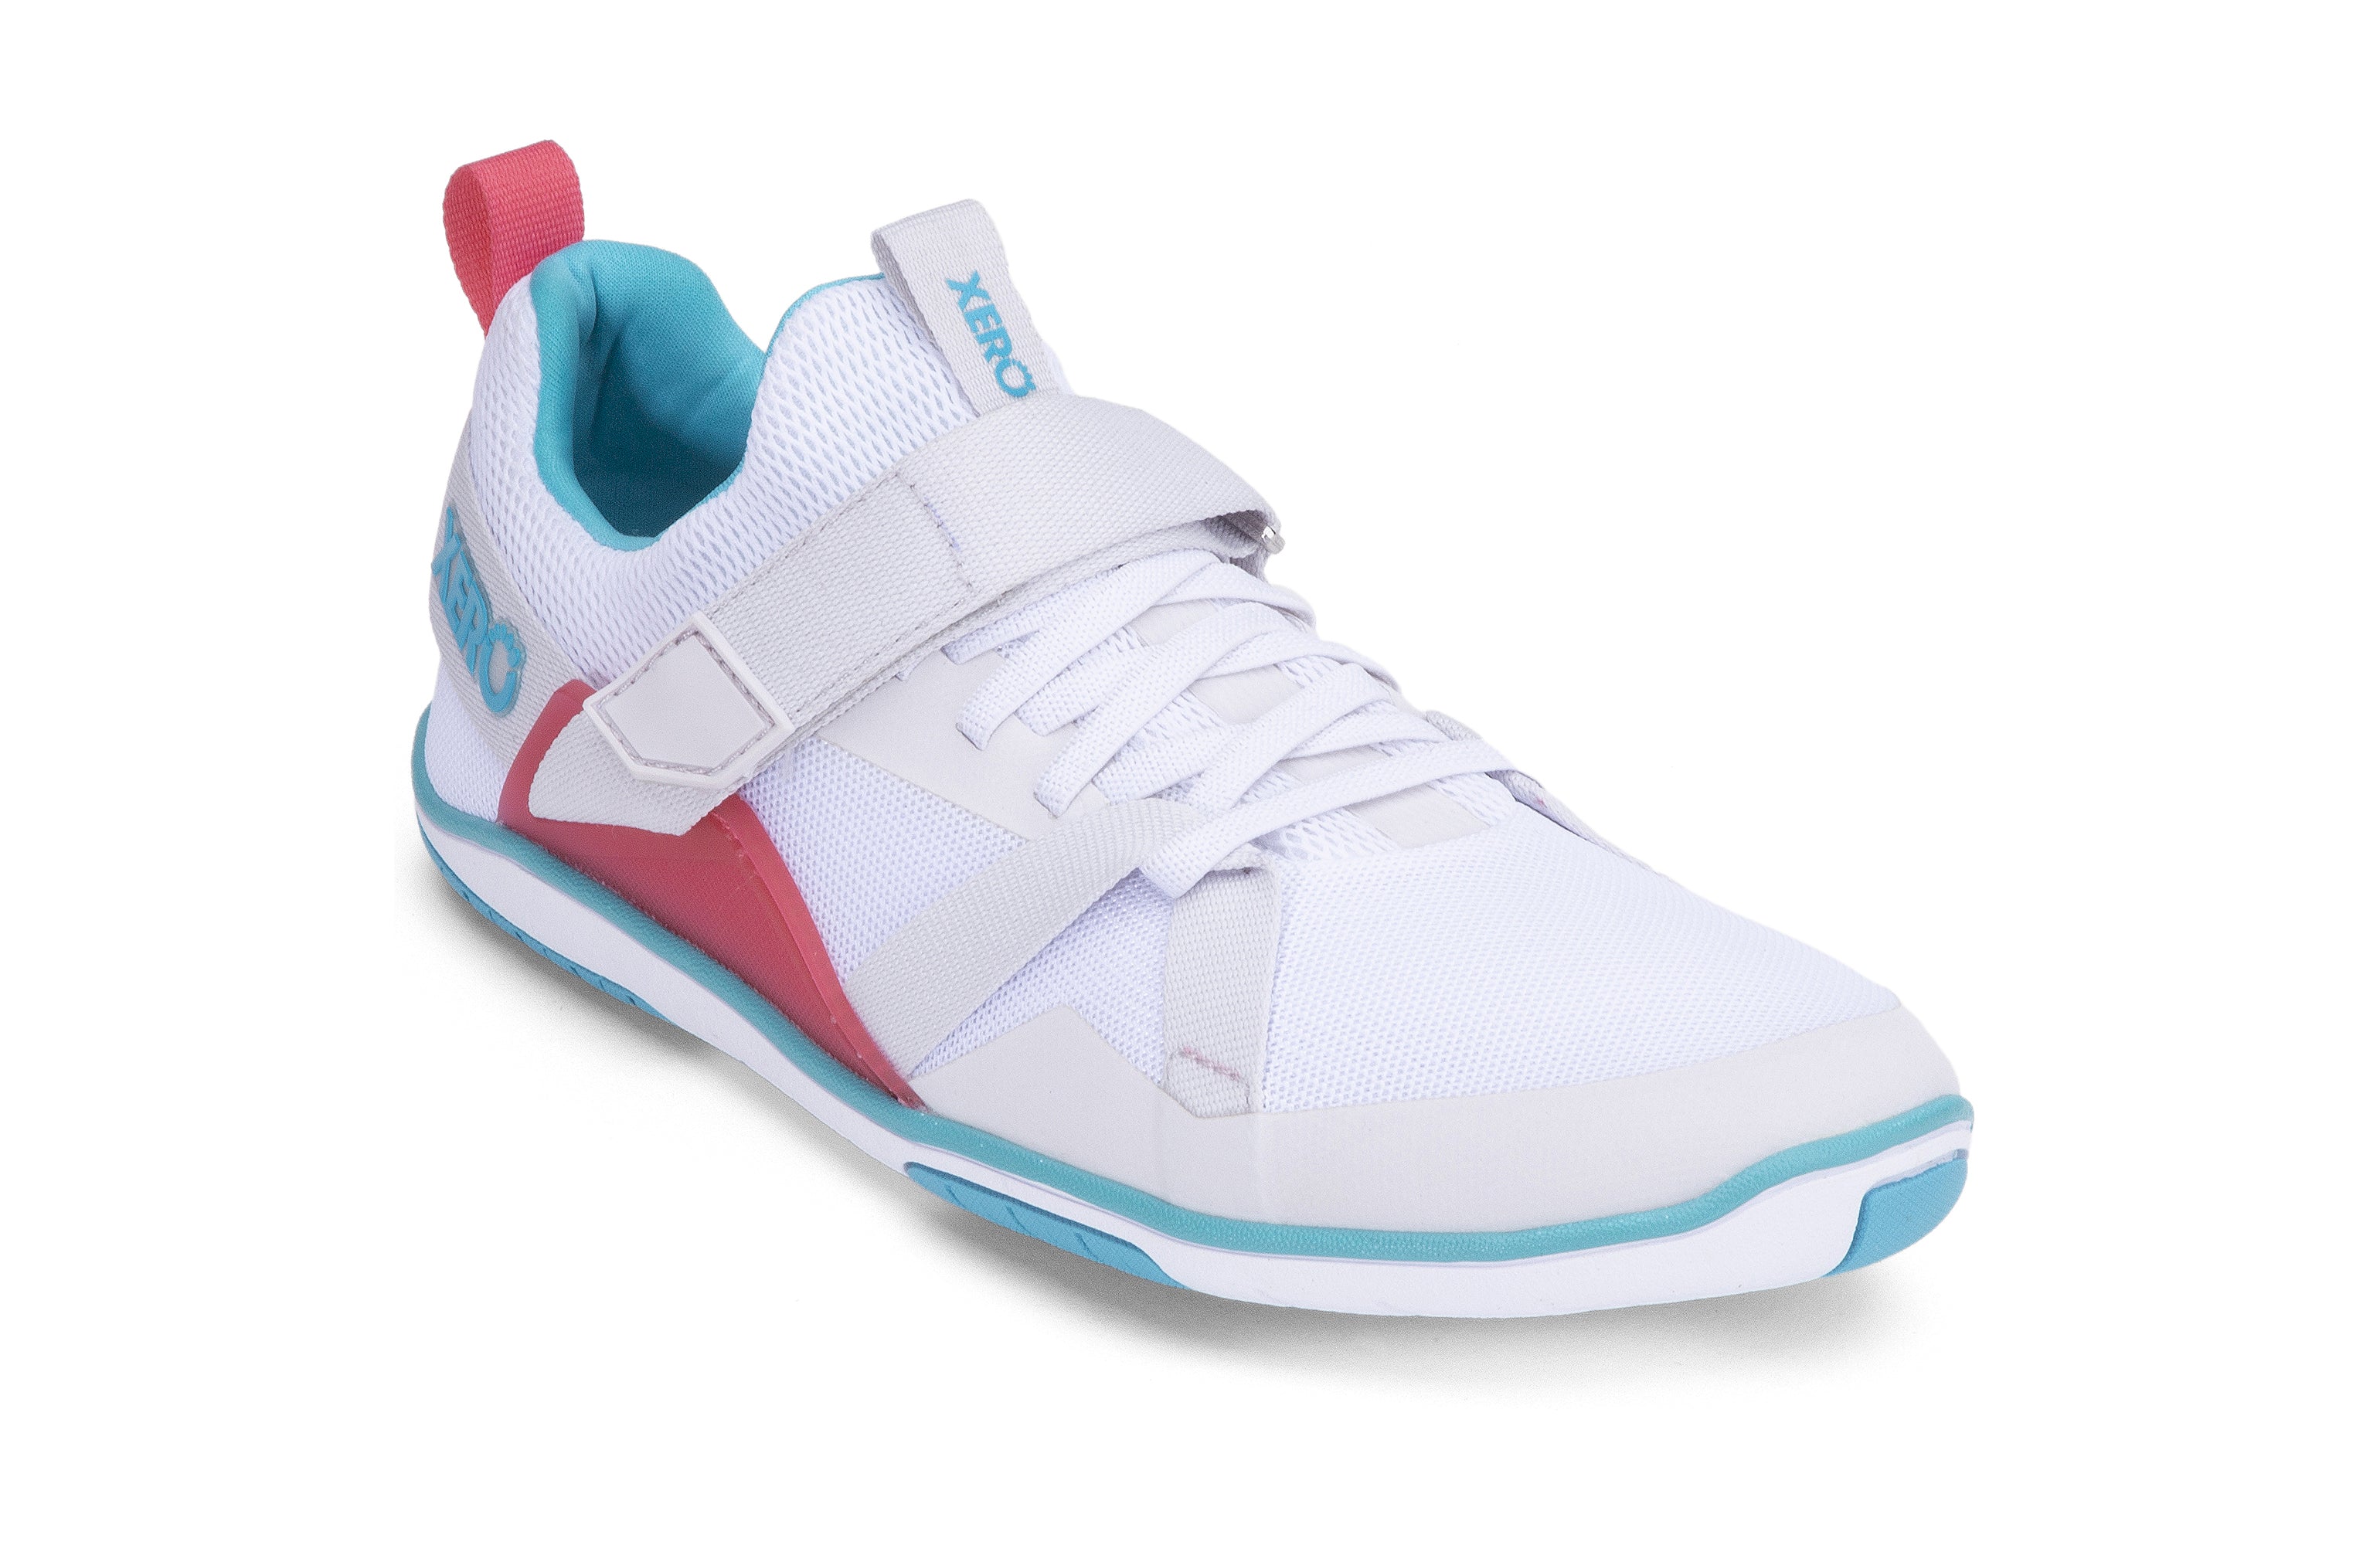 Xero Shoes Forza Trainer Womens barfods træningssko til kvinder i farven white / scuba blue, vinklet